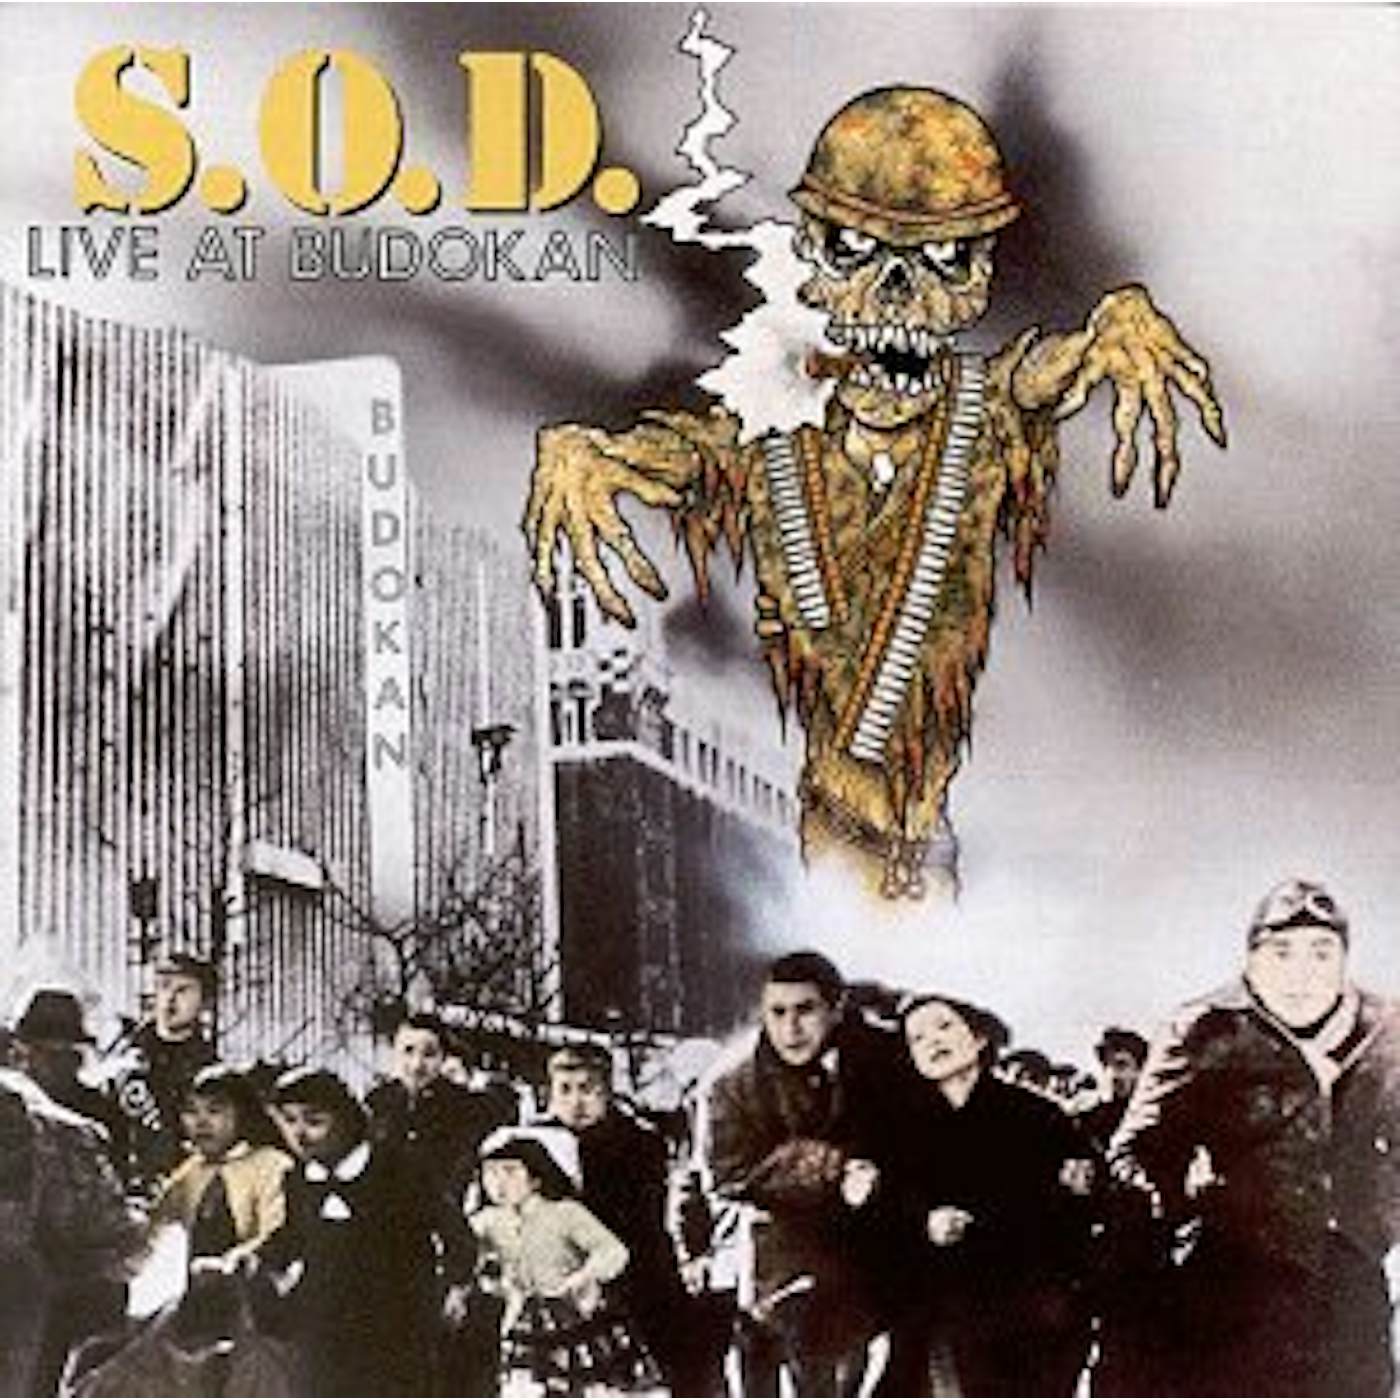 SOD LIVE AT BUDOKAN CD